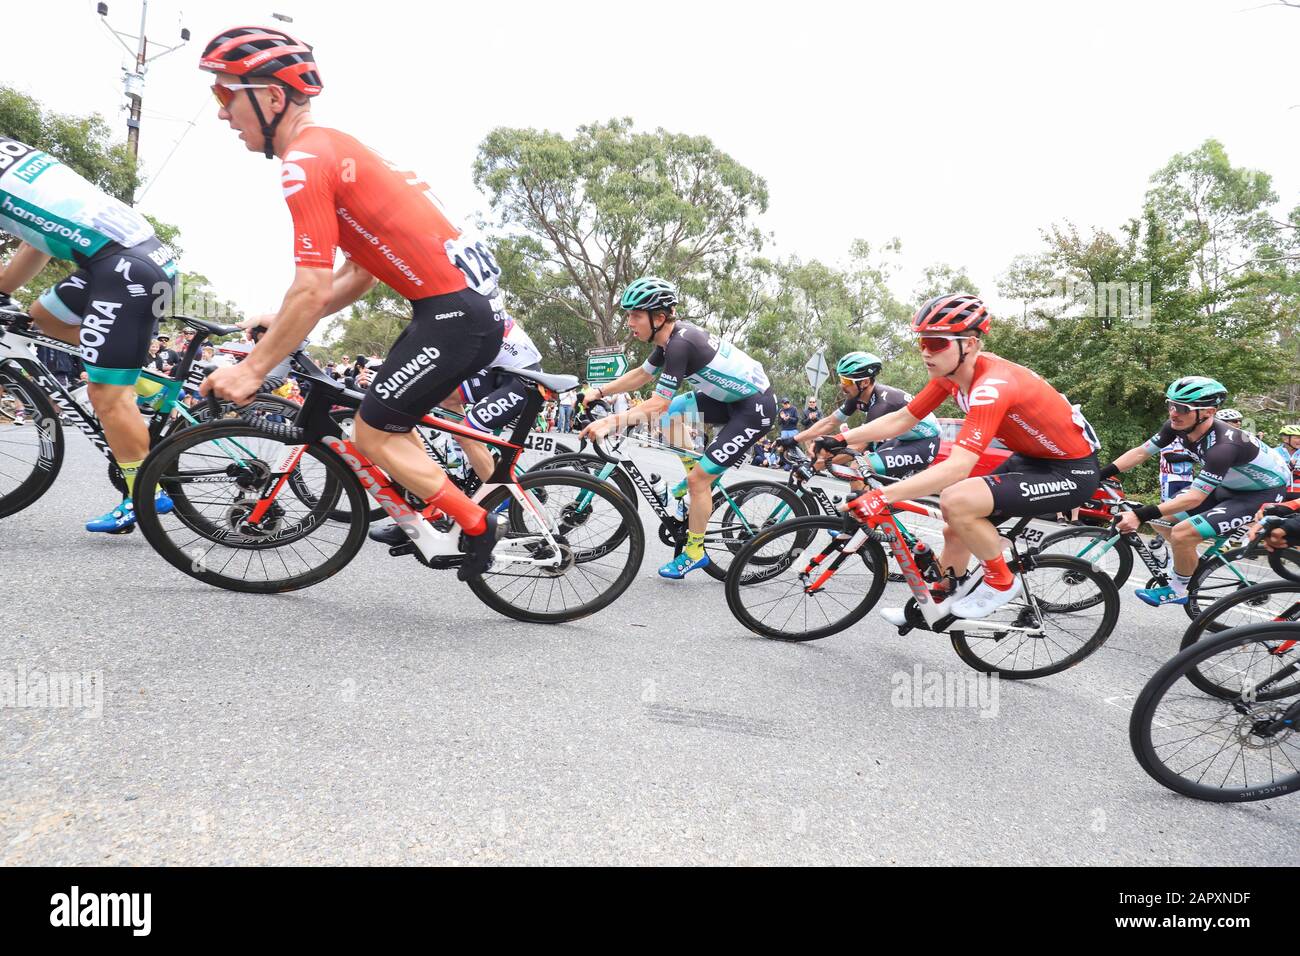 Les coureurs en compétition sur la phase 3 de la tournée 2020 Descendent Sous la course à vélo près d'Adélaïde Australie Banque D'Images